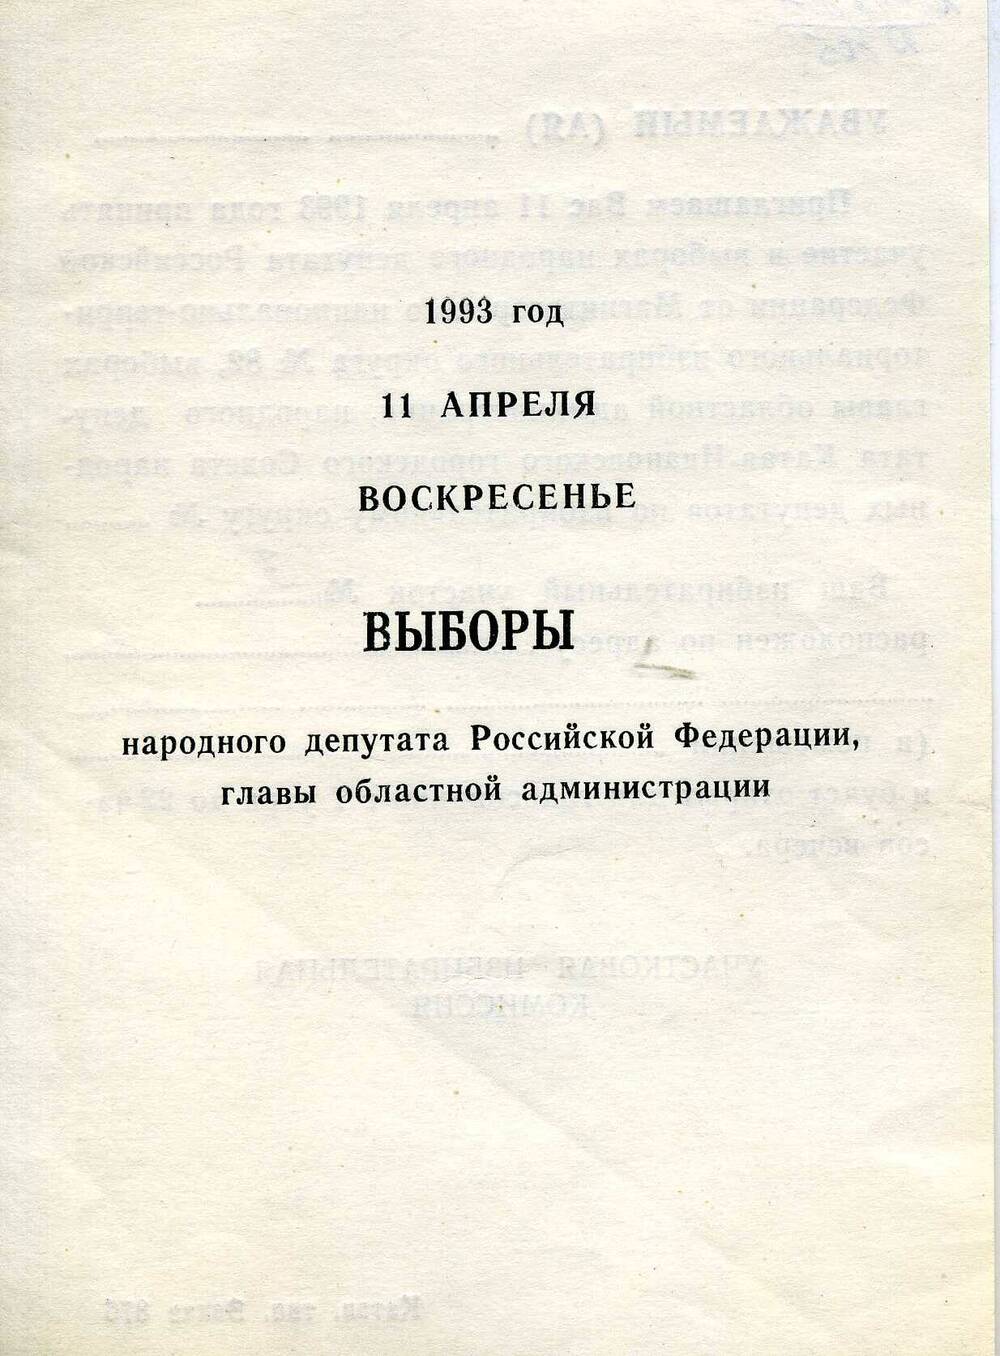 Приглашение на выборы народного депутата РФ, главы областной администрации, 11 апреля 1993г.